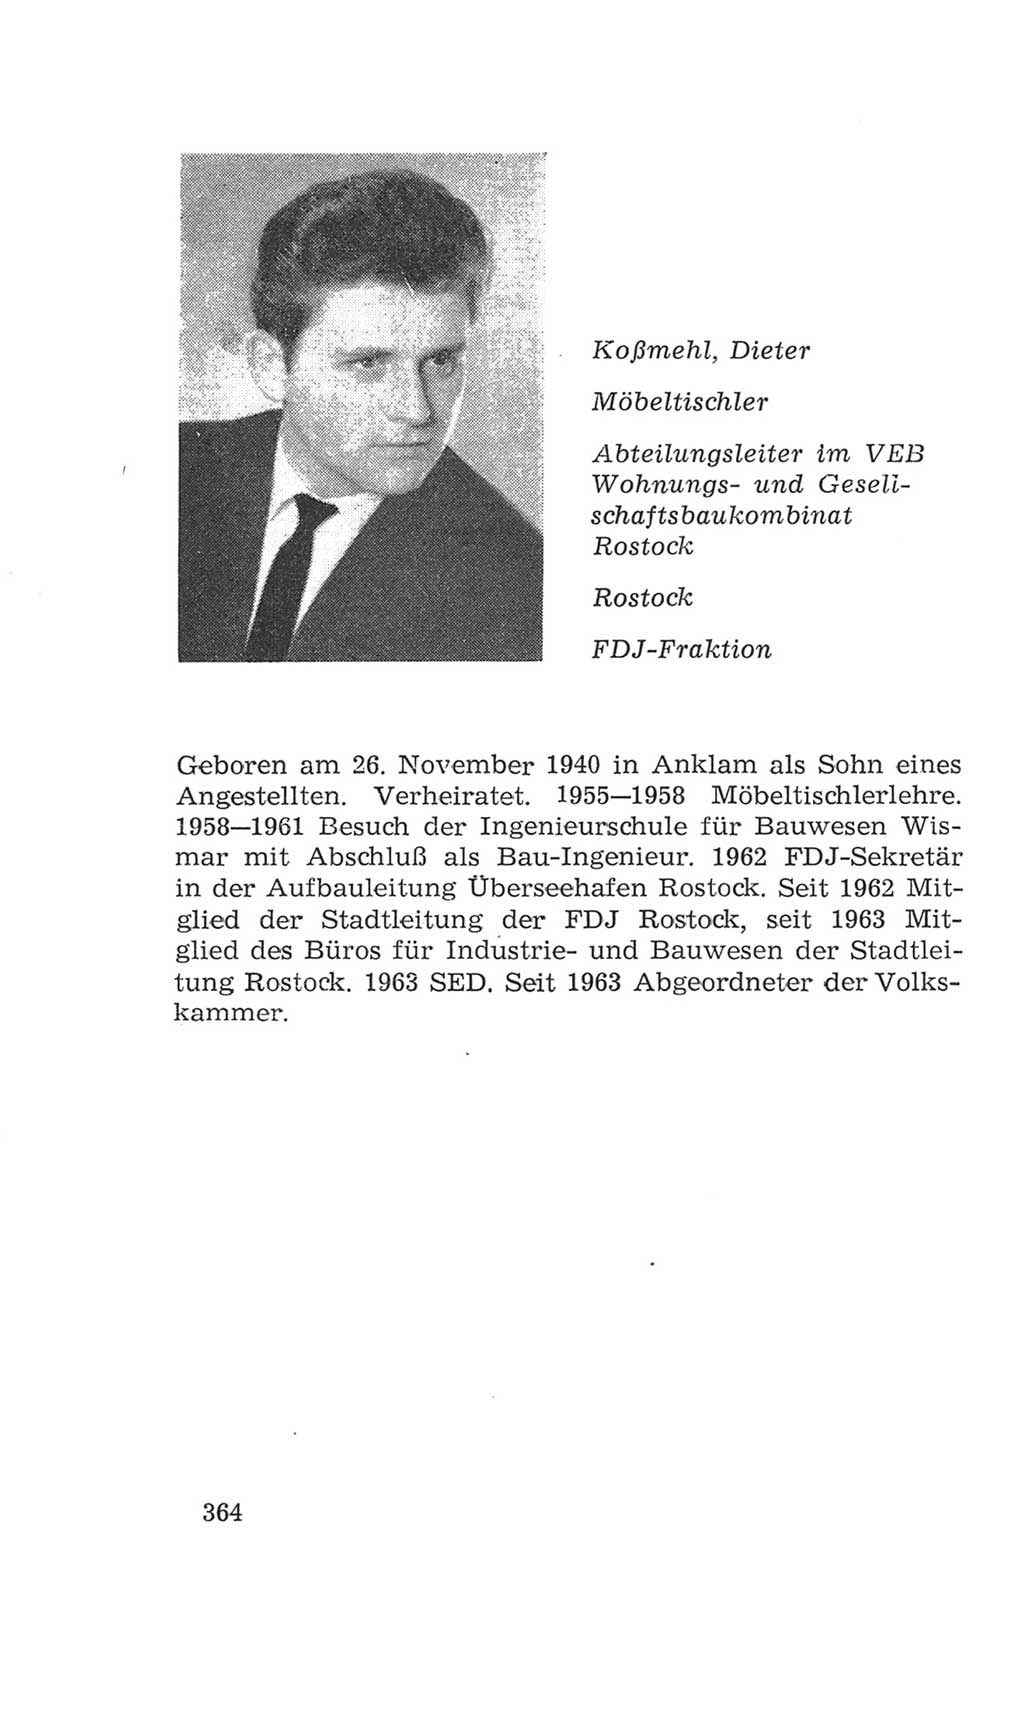 Volkskammer (VK) der Deutschen Demokratischen Republik (DDR), 4. Wahlperiode 1963-1967, Seite 364 (VK. DDR 4. WP. 1963-1967, S. 364)